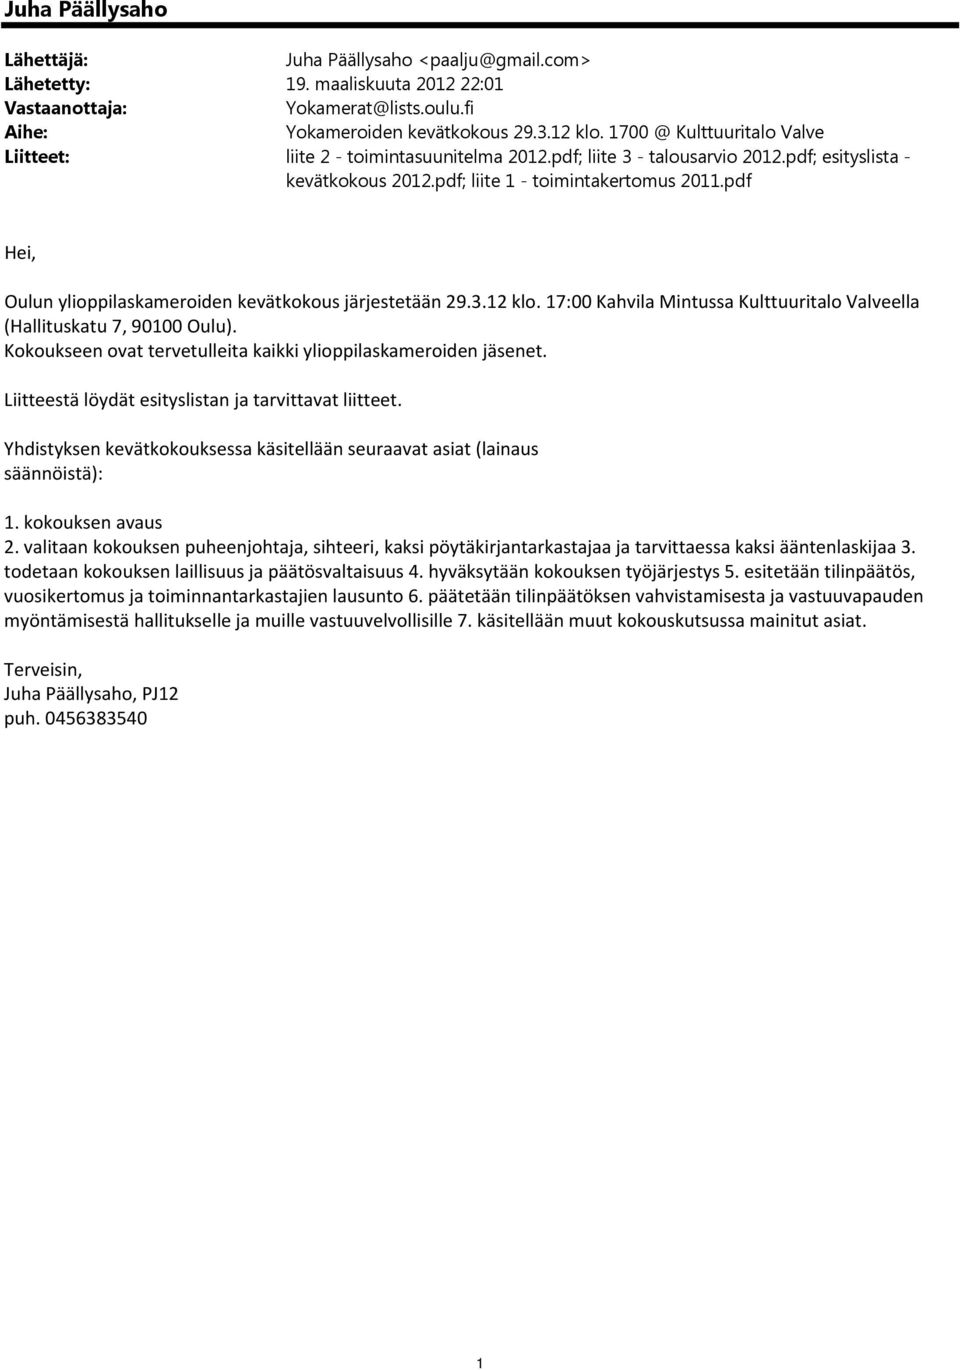 pdf Hei, Oulun ylioppilaskameroiden kevätkokous järjestetään 29.3.12 klo. 17:00 Kahvila Mintussa Kulttuuritalo Valveella (Hallituskatu 7, 90100 Oulu).